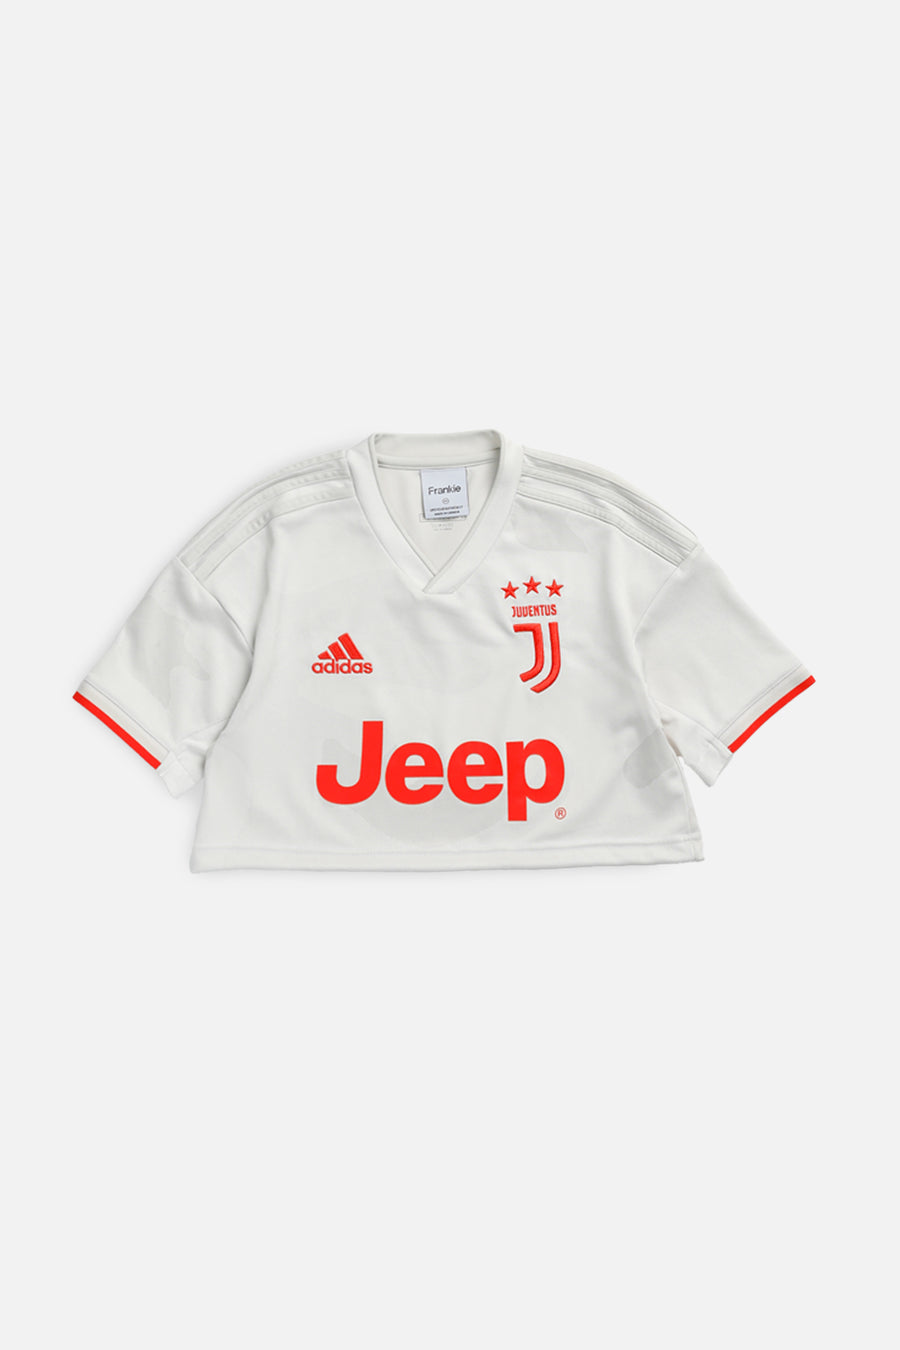 Rework Crop Juventus Soccer Jersey - XS